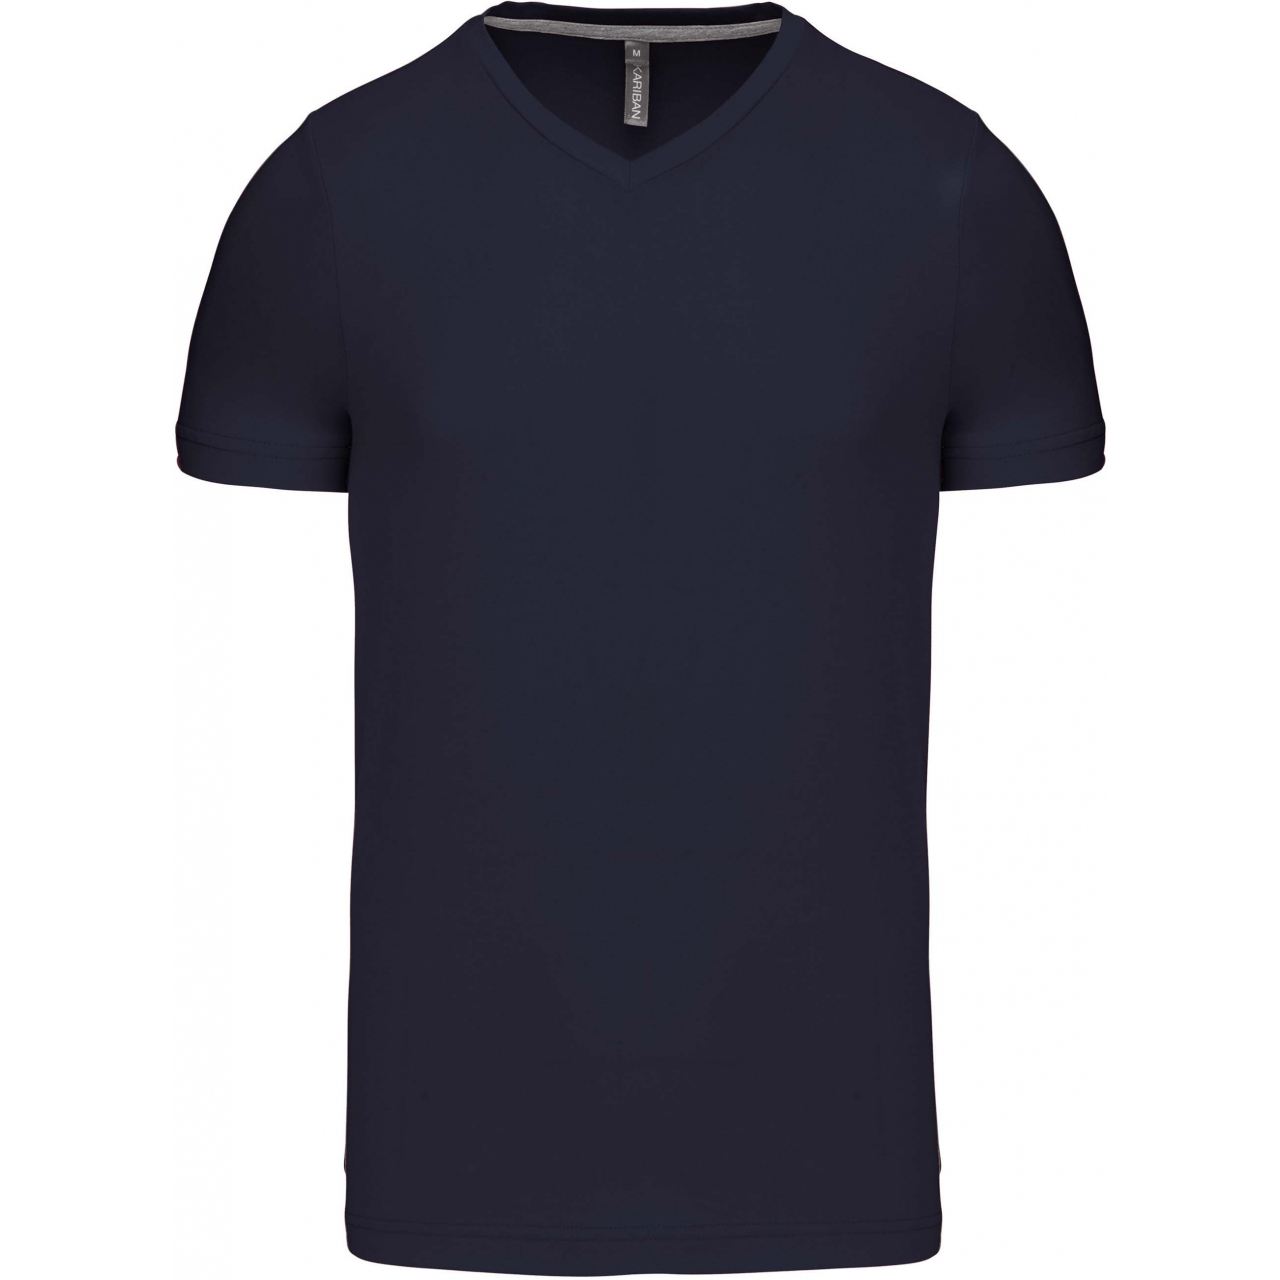 Pánské tričko Kariban krátký rukáv V-neck - navy, L